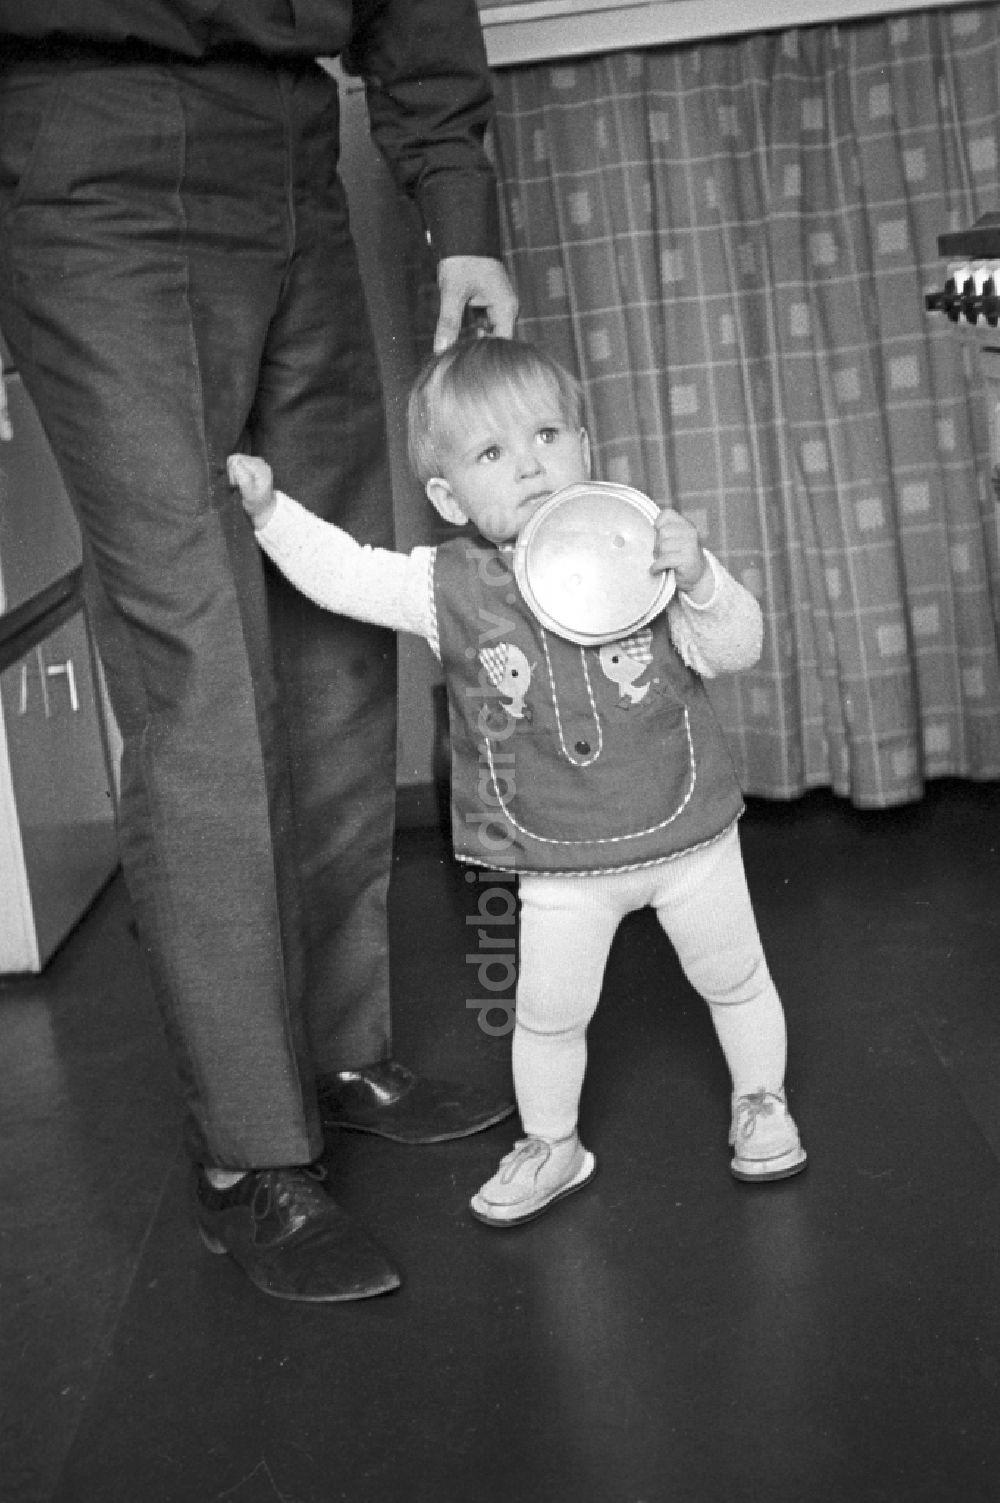 DDR-Fotoarchiv: Berlin - Friedrichshain - Erste Laufversuche eines Kleinkindes mit Hilfe von Papa in Berlin - Friedrichshain